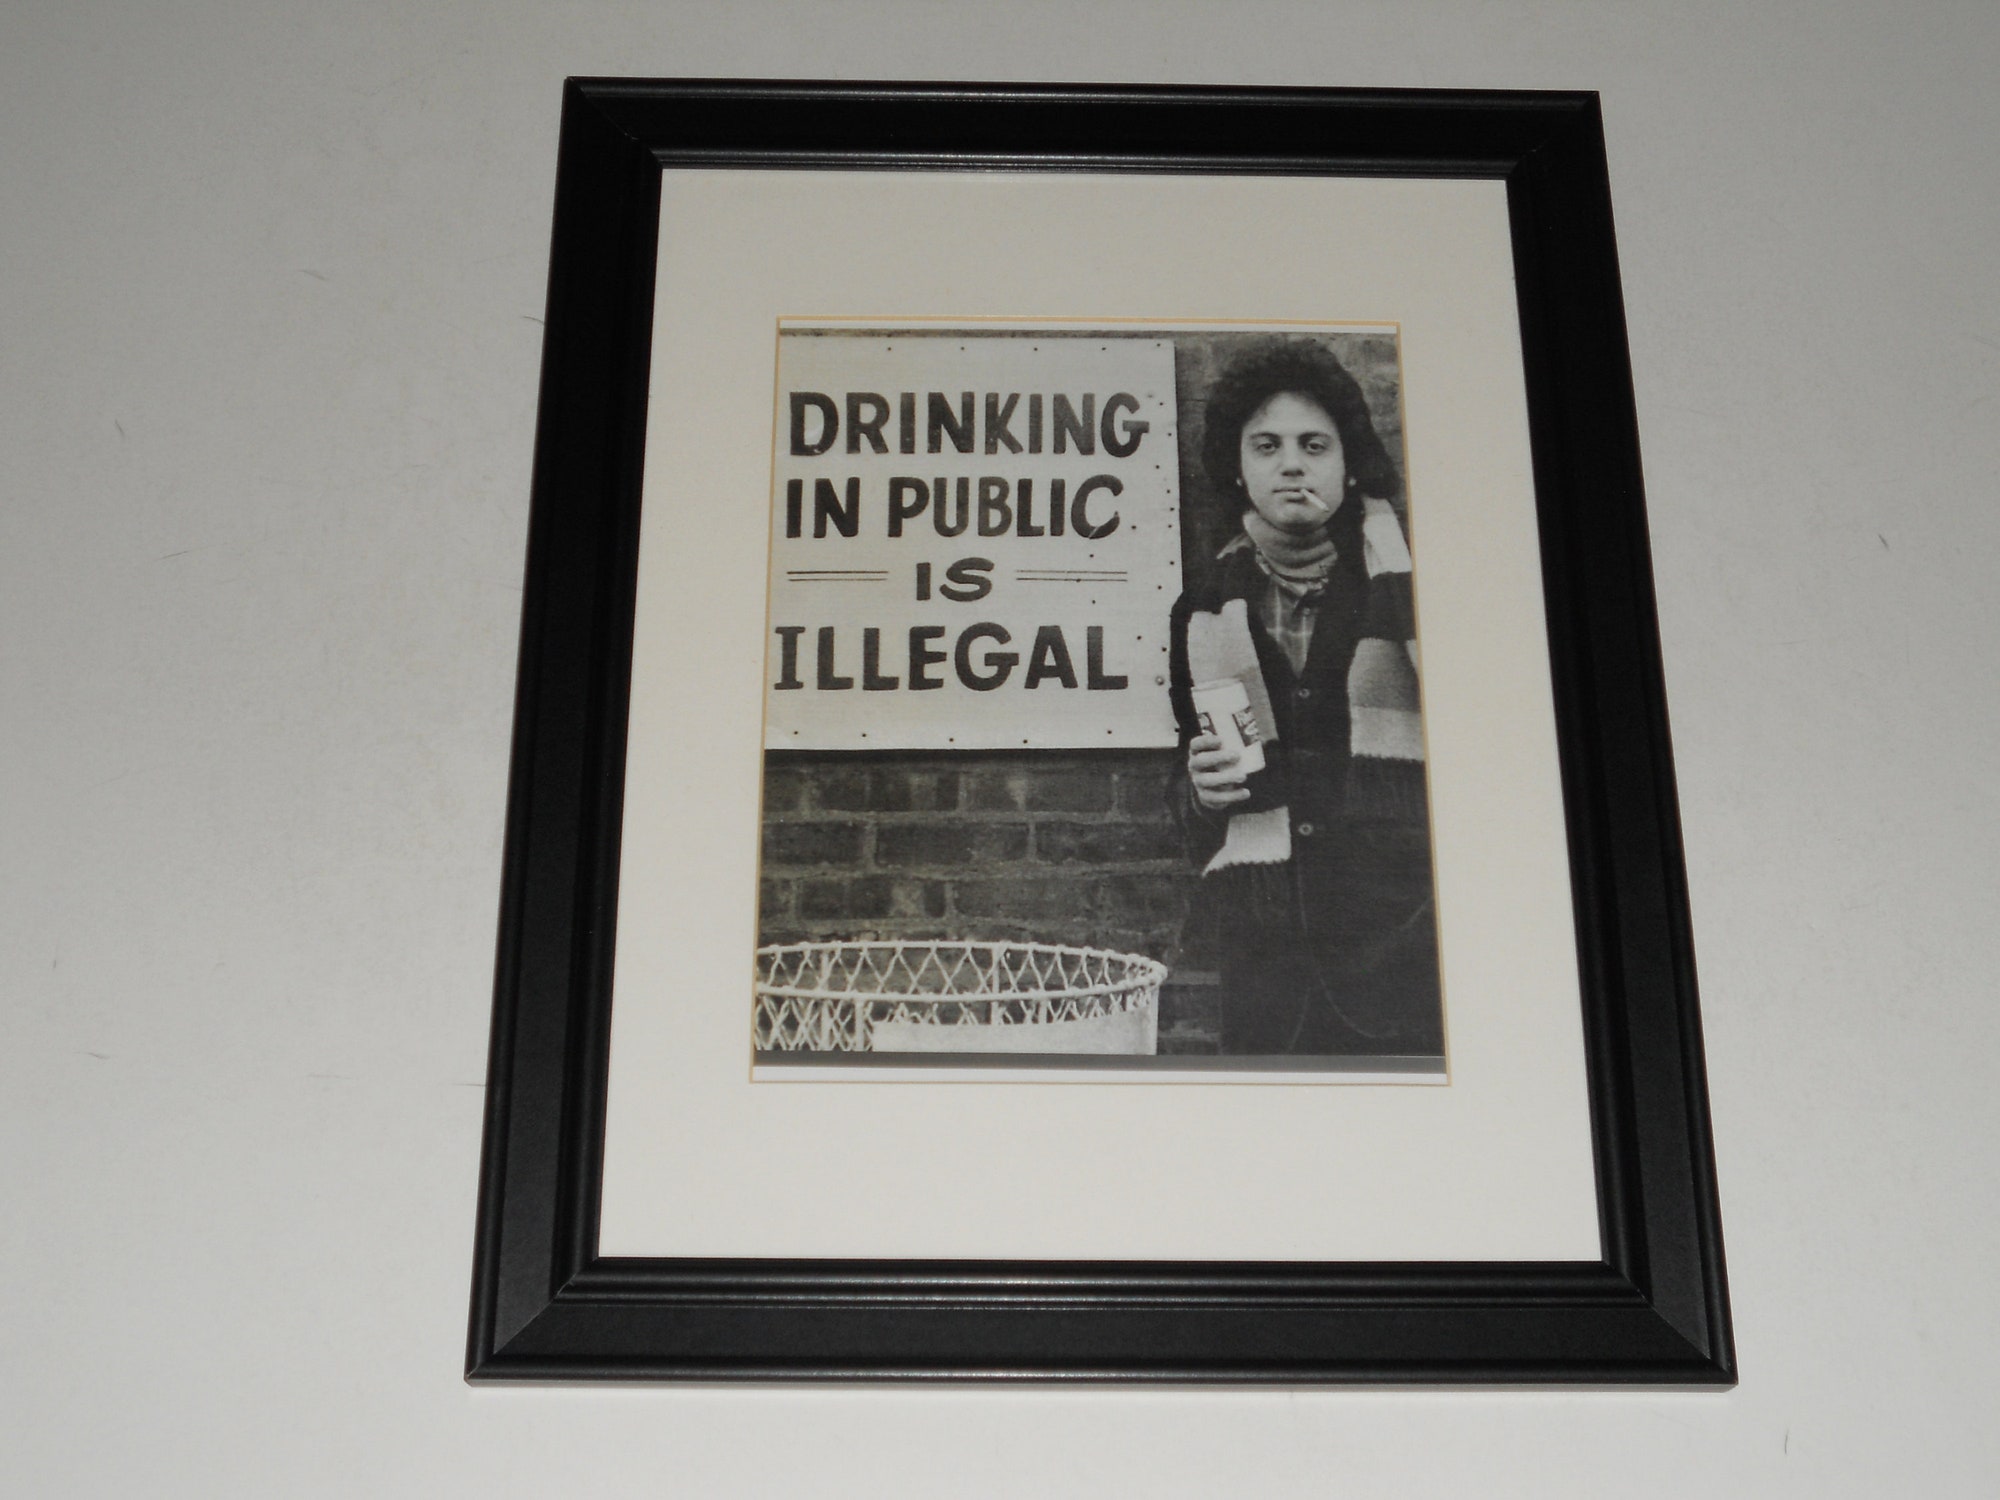 Billy Joel "Drinking in Public" Poster